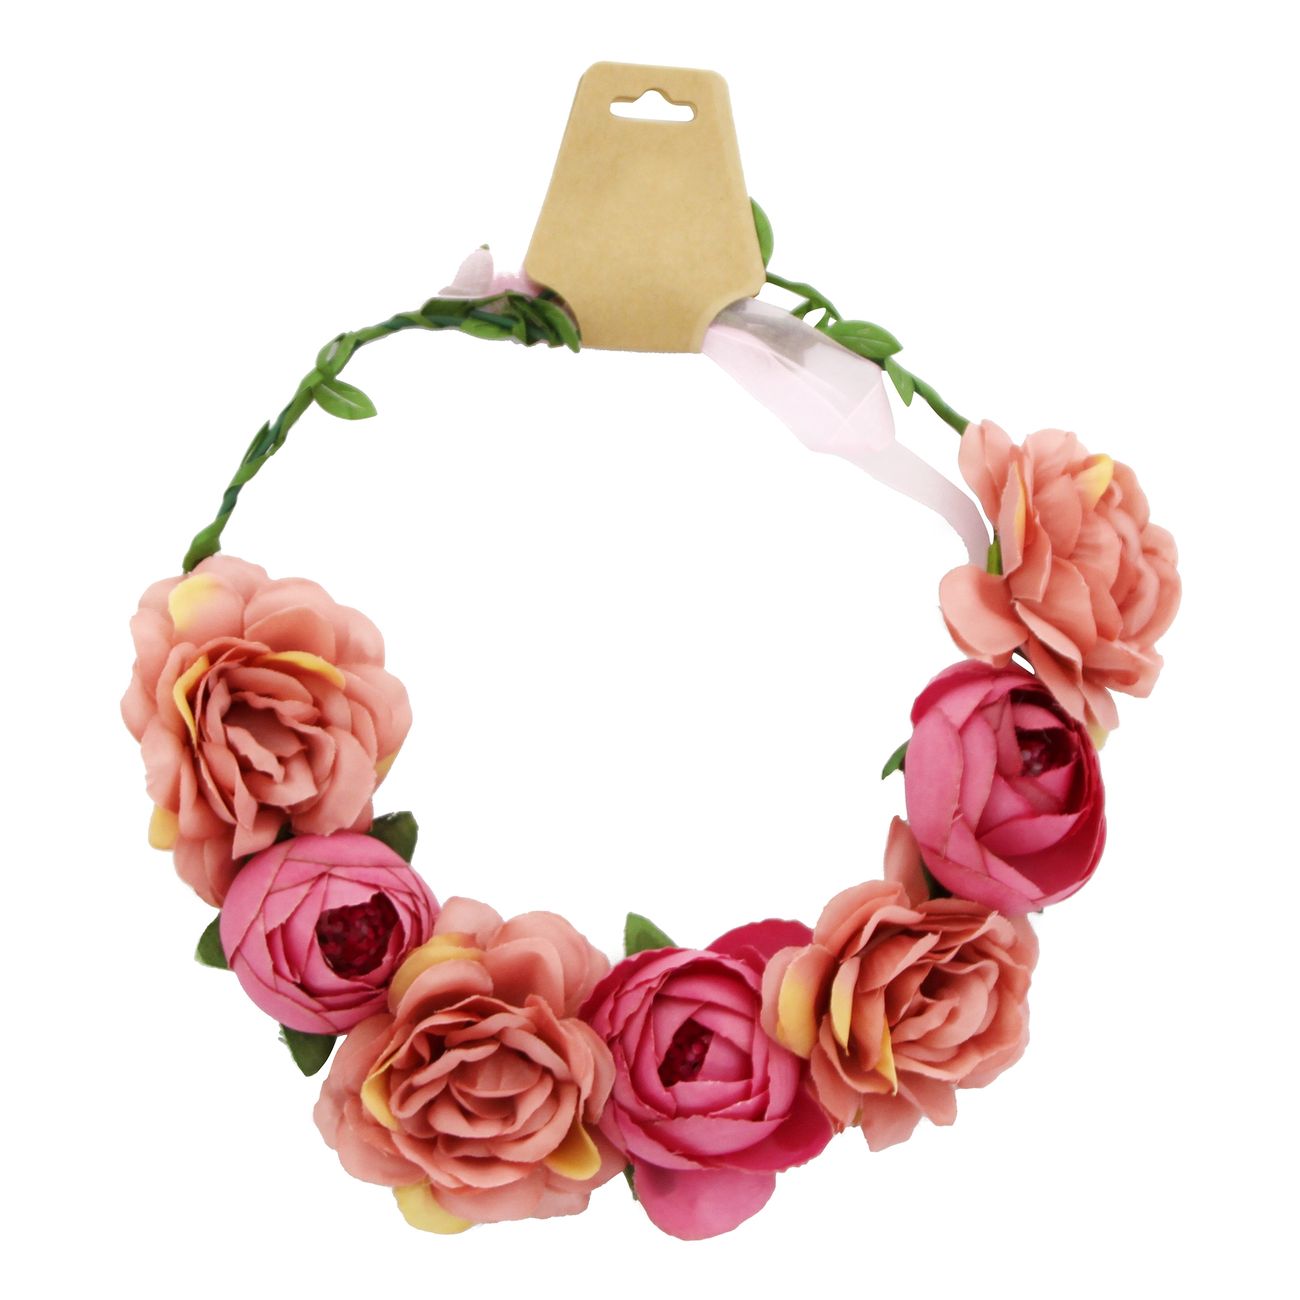 Registrering Formen Svane Blomsterkrans med Lyserøde Roser | Partykungen